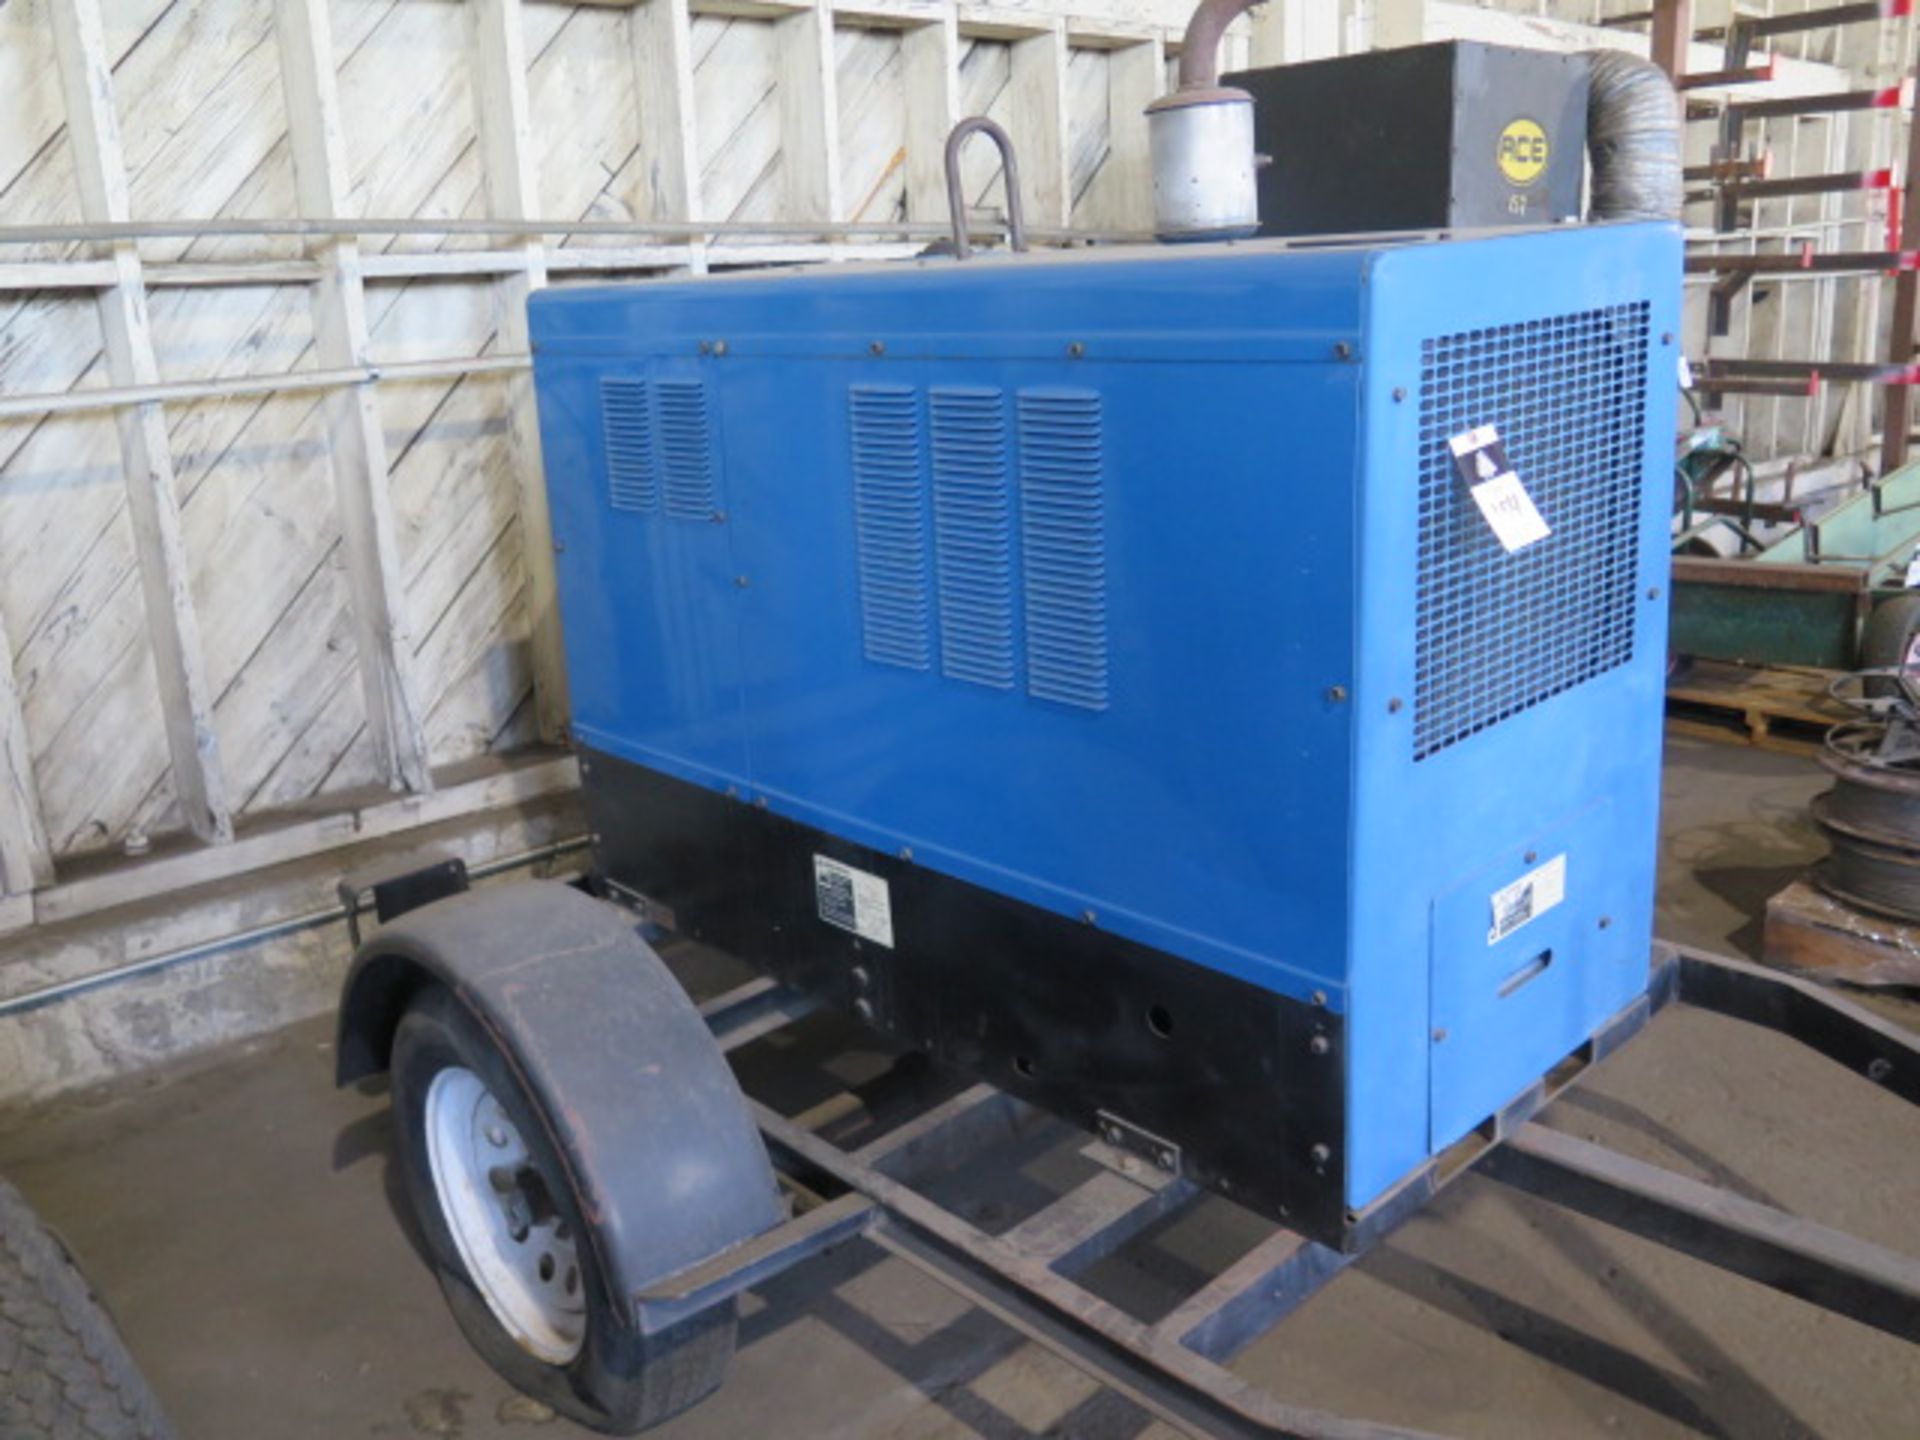 Miller Big Blue 402P Towable Diesel CC/CV-DC Welding Generator w Perkins Diesel Engine, SOLD AS IS - Image 3 of 11